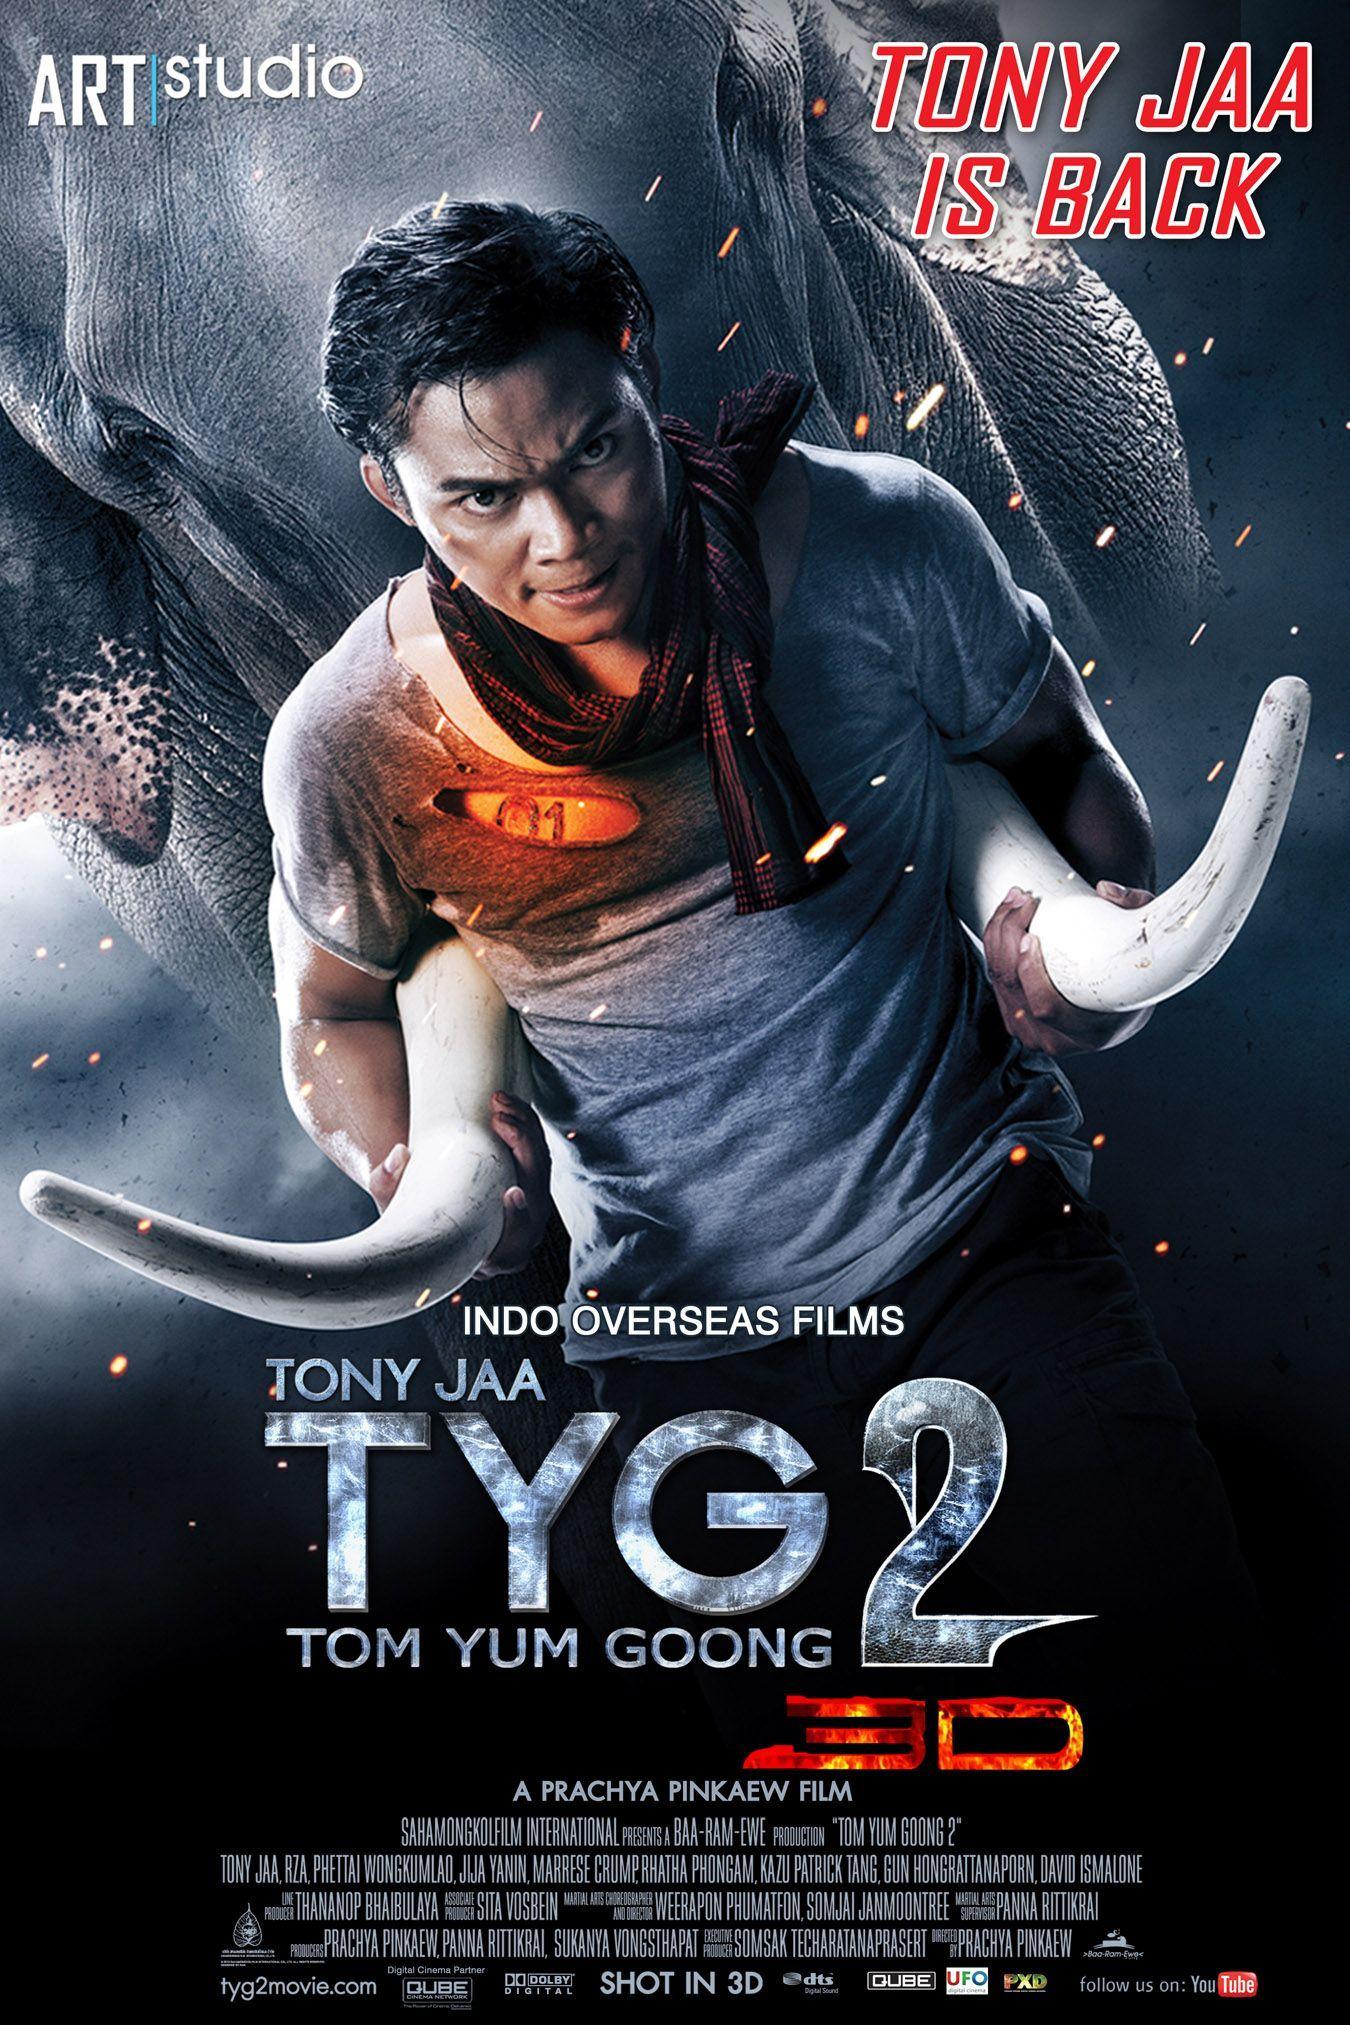 Tony jaa new movie tyg2 download